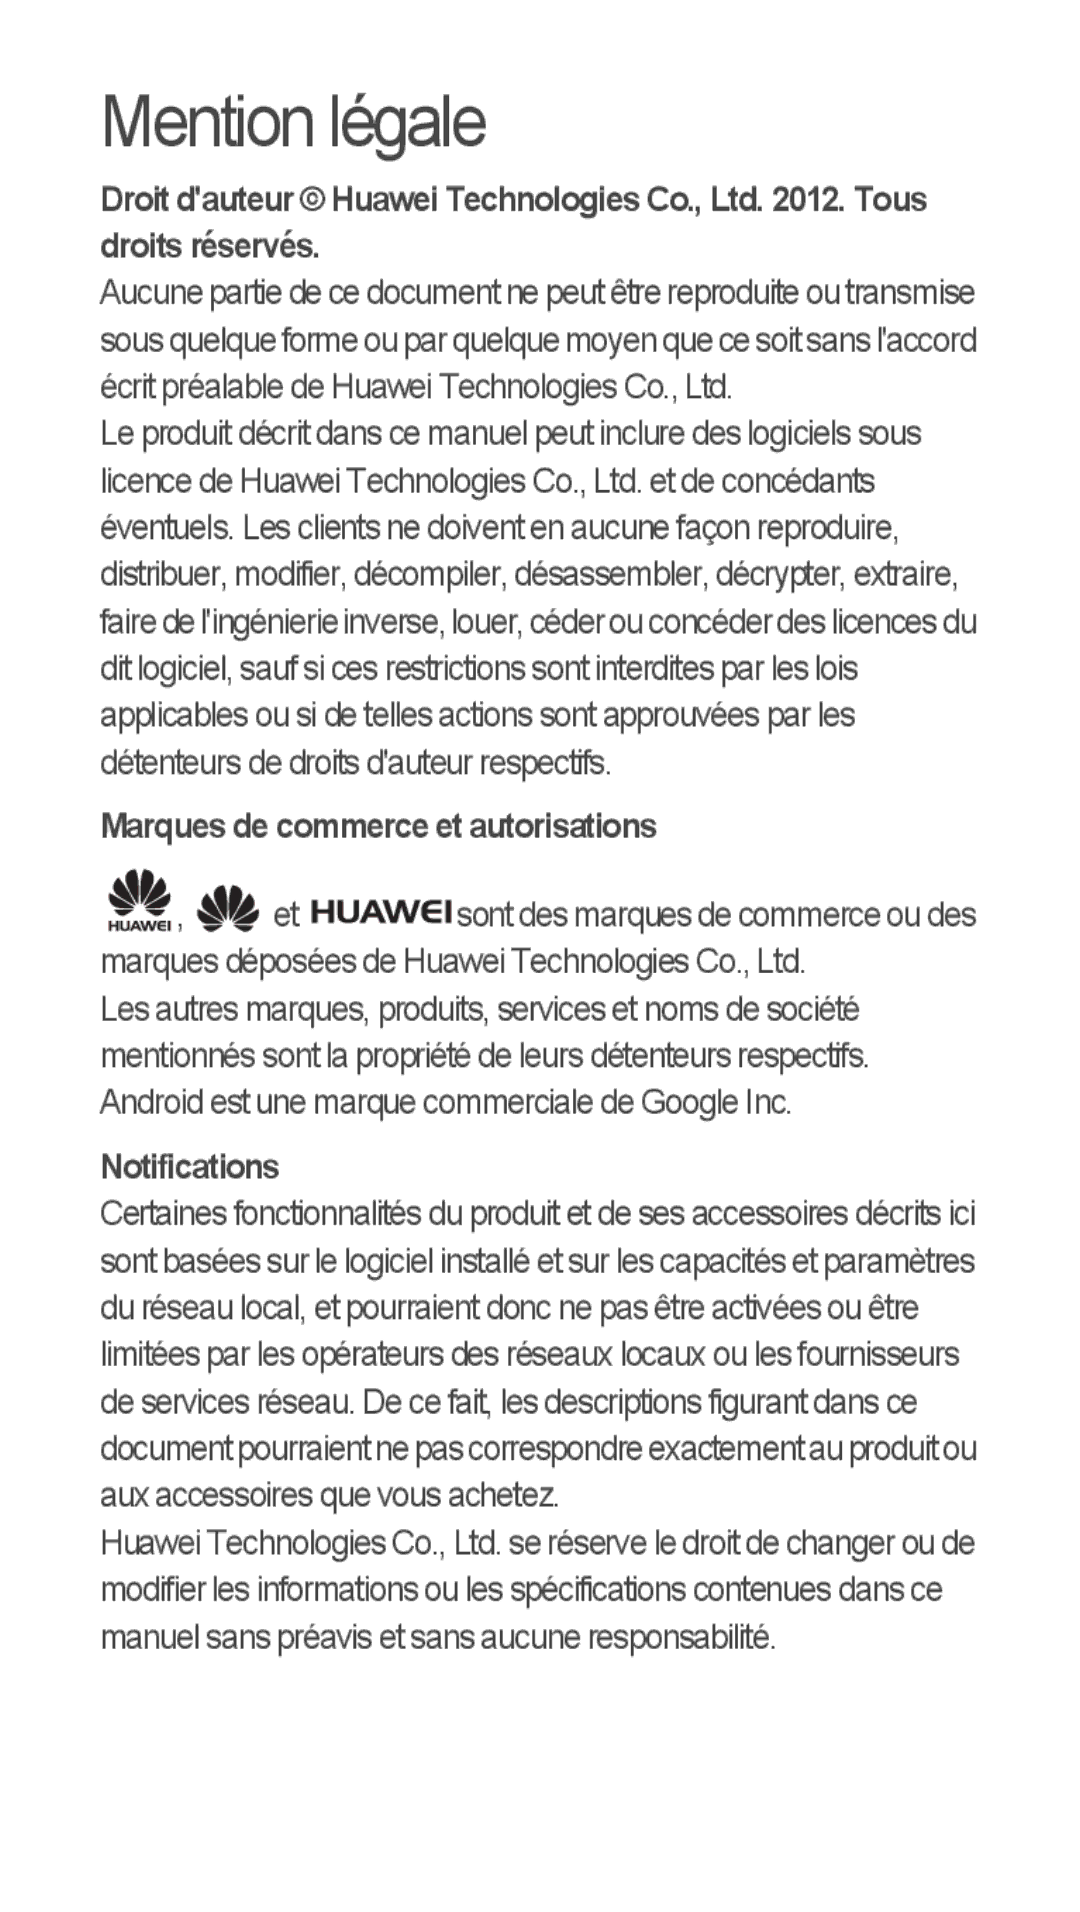 Huawei u8815 quick start Mention légale, Marques de commerce et autorisations, Notifications 